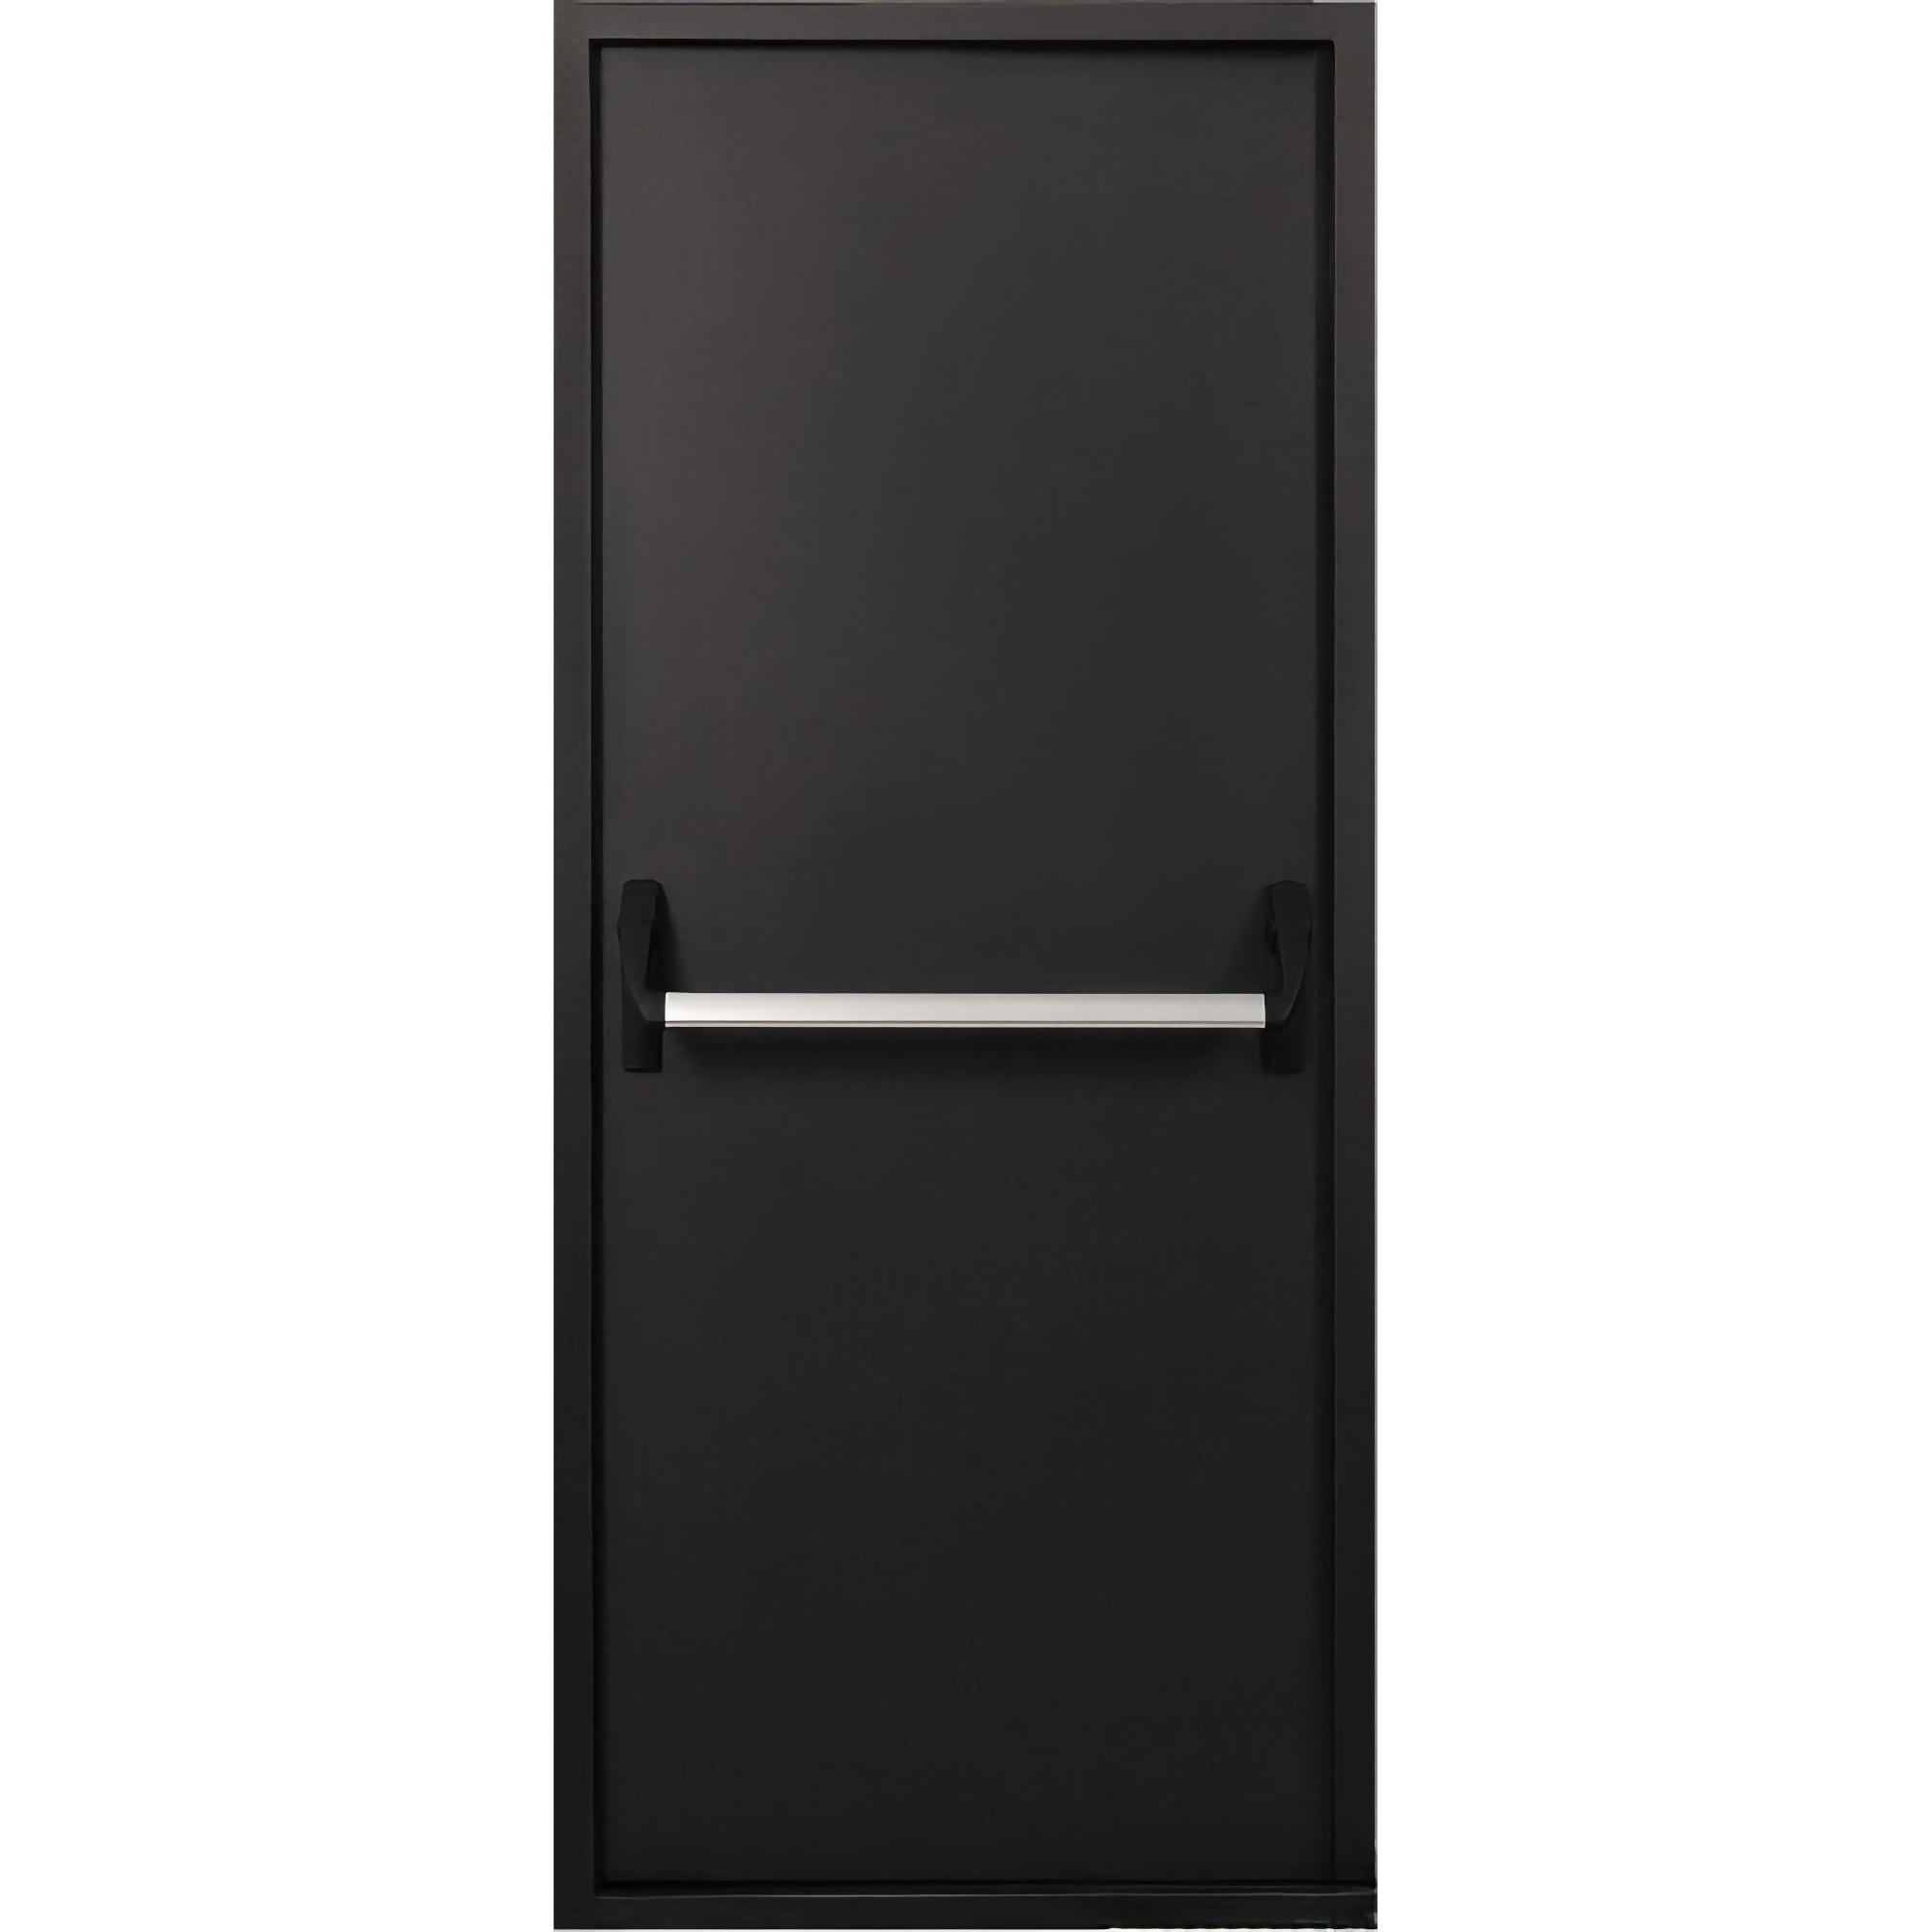 Двери технические металлические - качественные материалы и надежная конструкция. - TD-EI-60 • 860*2050